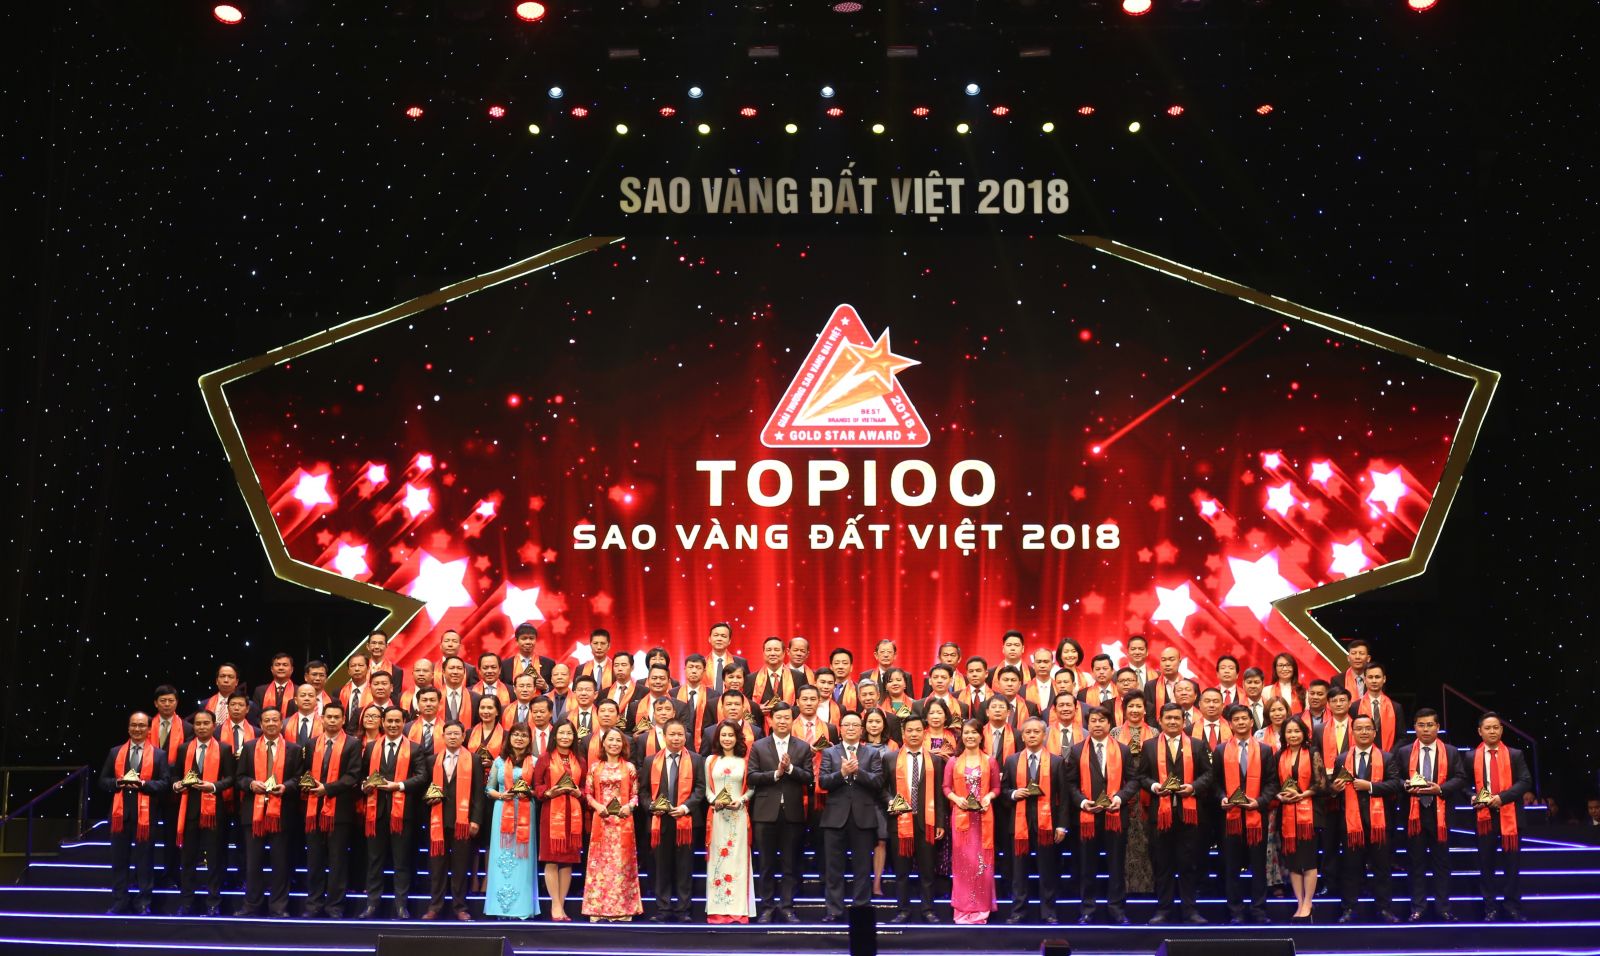 Top 100 Sao Vàng đất Việt 2018 – Nhiều thương hiệu uy tín tại Lễ Vinh danh: Vietinbank, Khang Điền, Hưng Thịnh, Saigontourist…